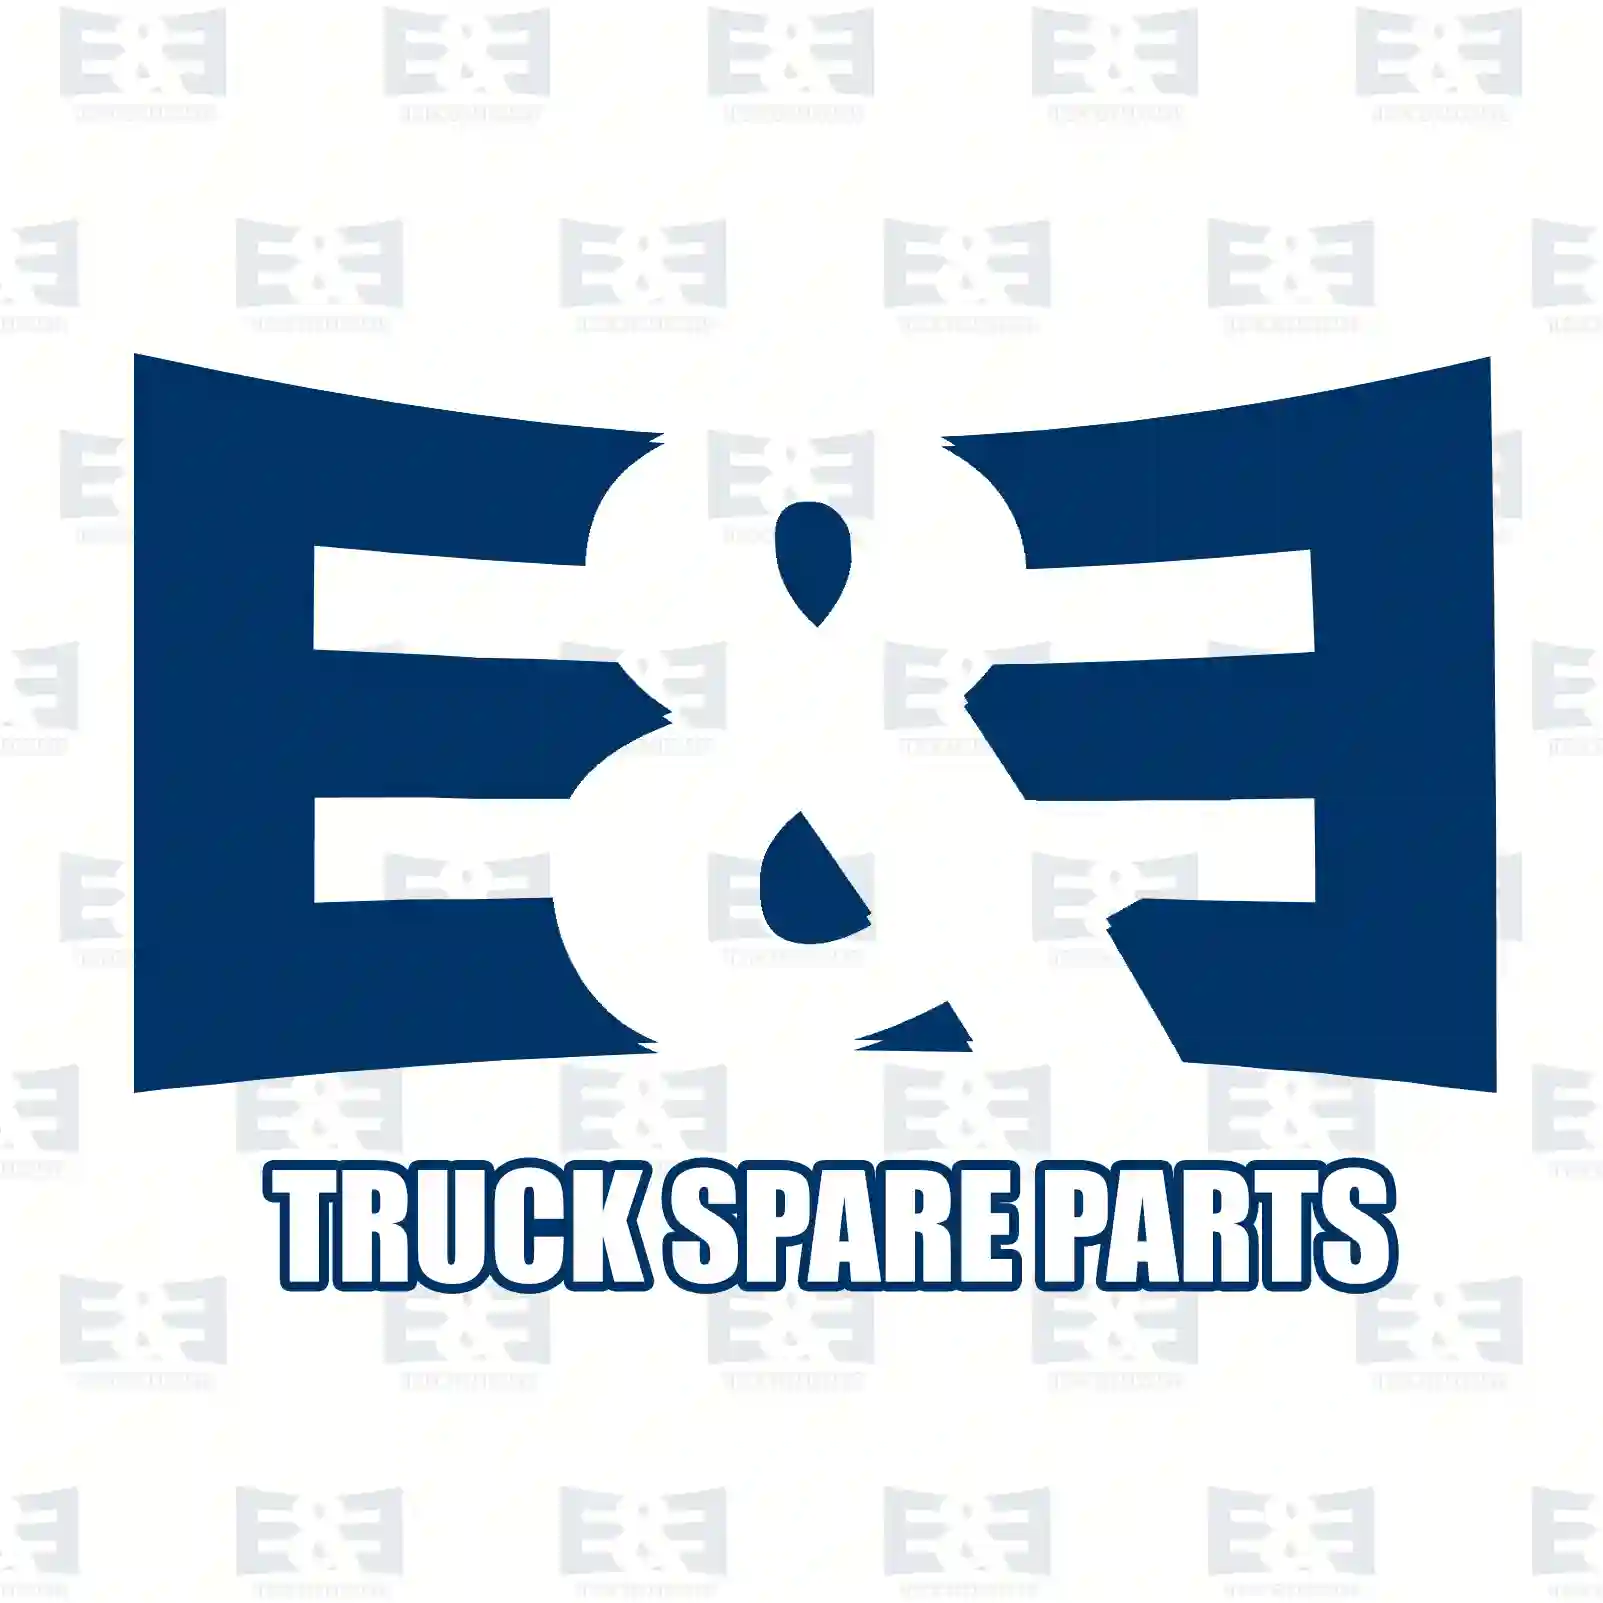 Lock nut, 2E2285981, 0019907651, 0019907651, ZG40547-0008 ||  2E2285981 E&E Truck Spare Parts | Truck Spare Parts, Auotomotive Spare Parts Lock nut, 2E2285981, 0019907651, 0019907651, ZG40547-0008 ||  2E2285981 E&E Truck Spare Parts | Truck Spare Parts, Auotomotive Spare Parts